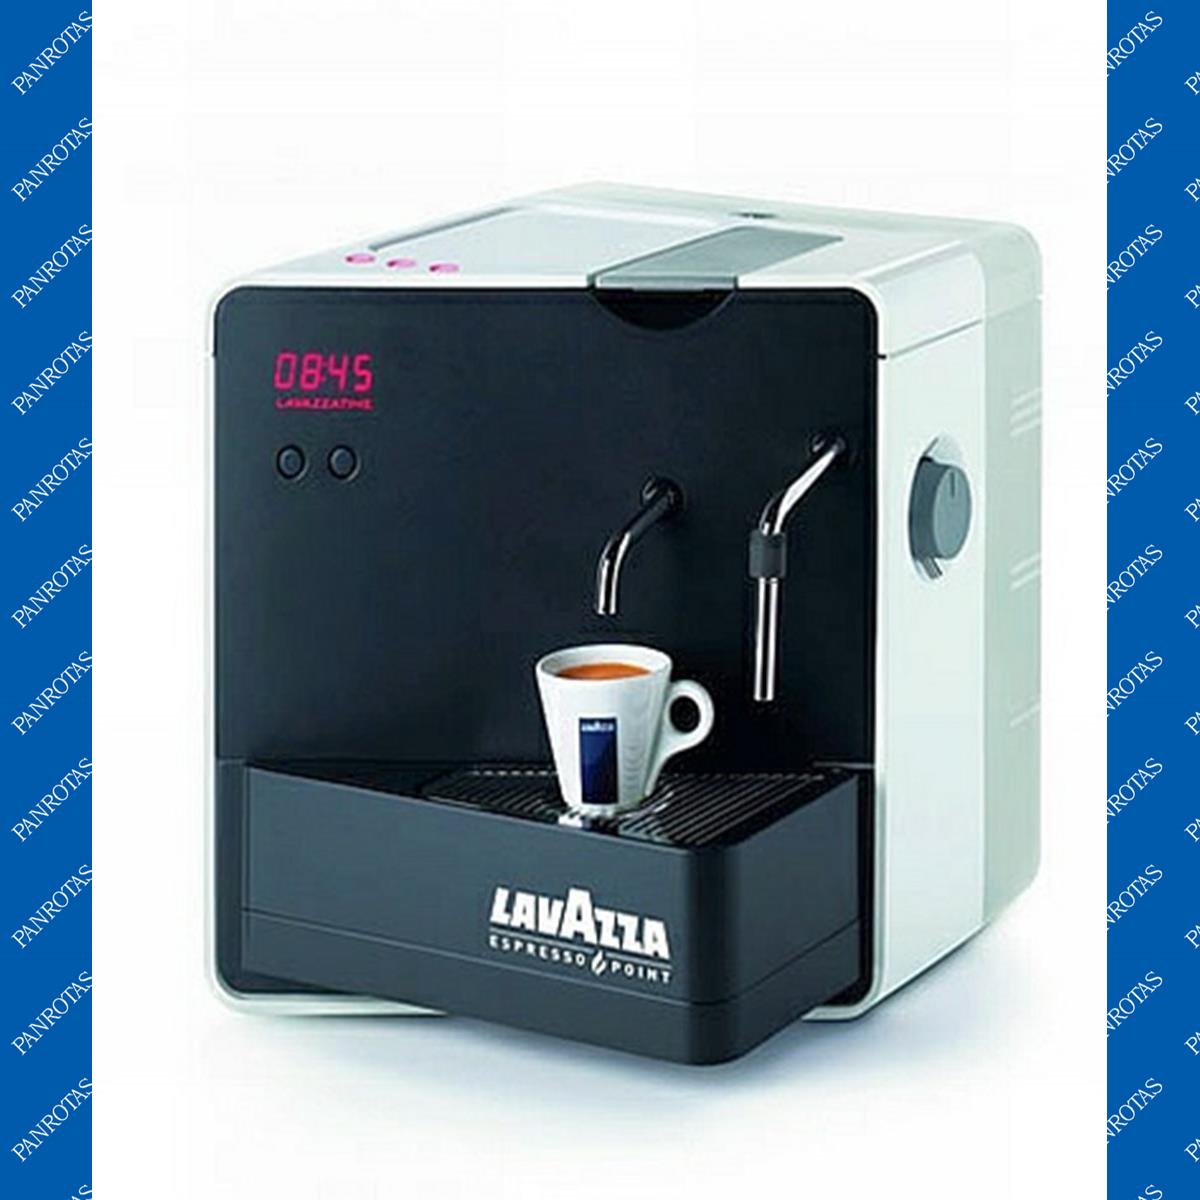 Macchine Lavazza Lavazza Espresso Point Ep 1800 Time